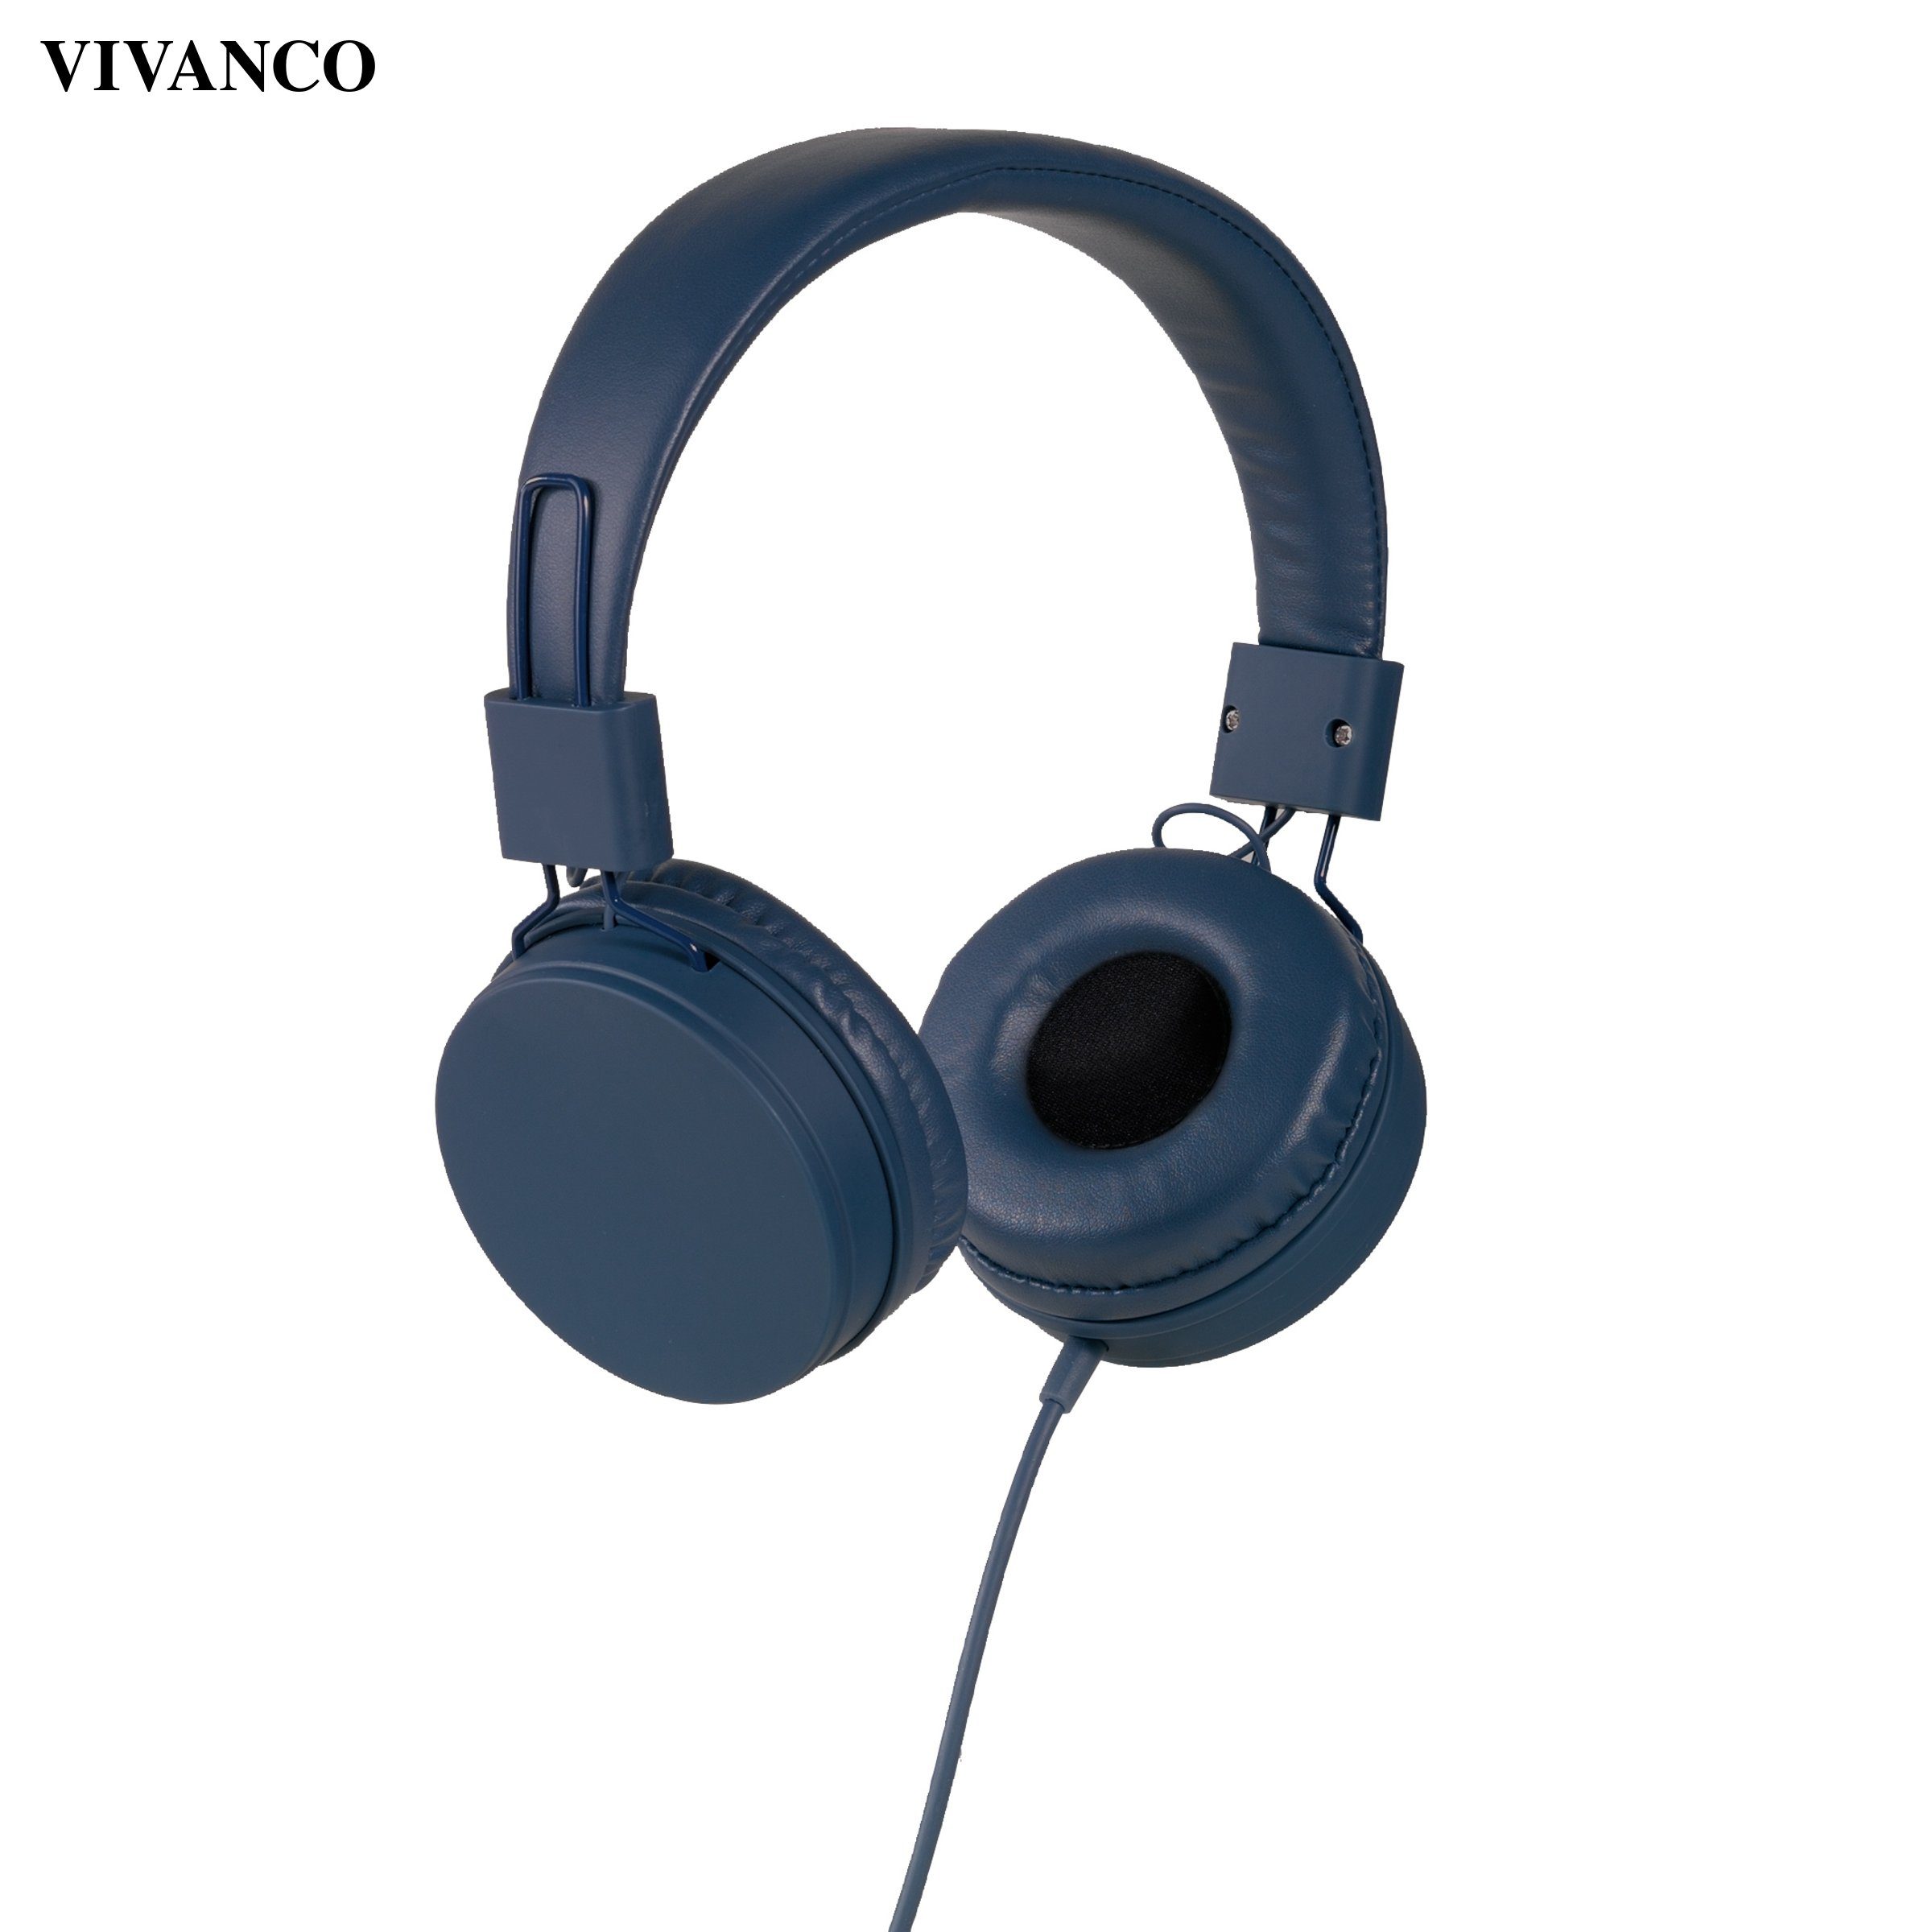 Kopfhörer Kopfhörer, Vivanco (Anruffunktion), Kopfhörer Ohraufliegende Vivanco Ohraufliegende